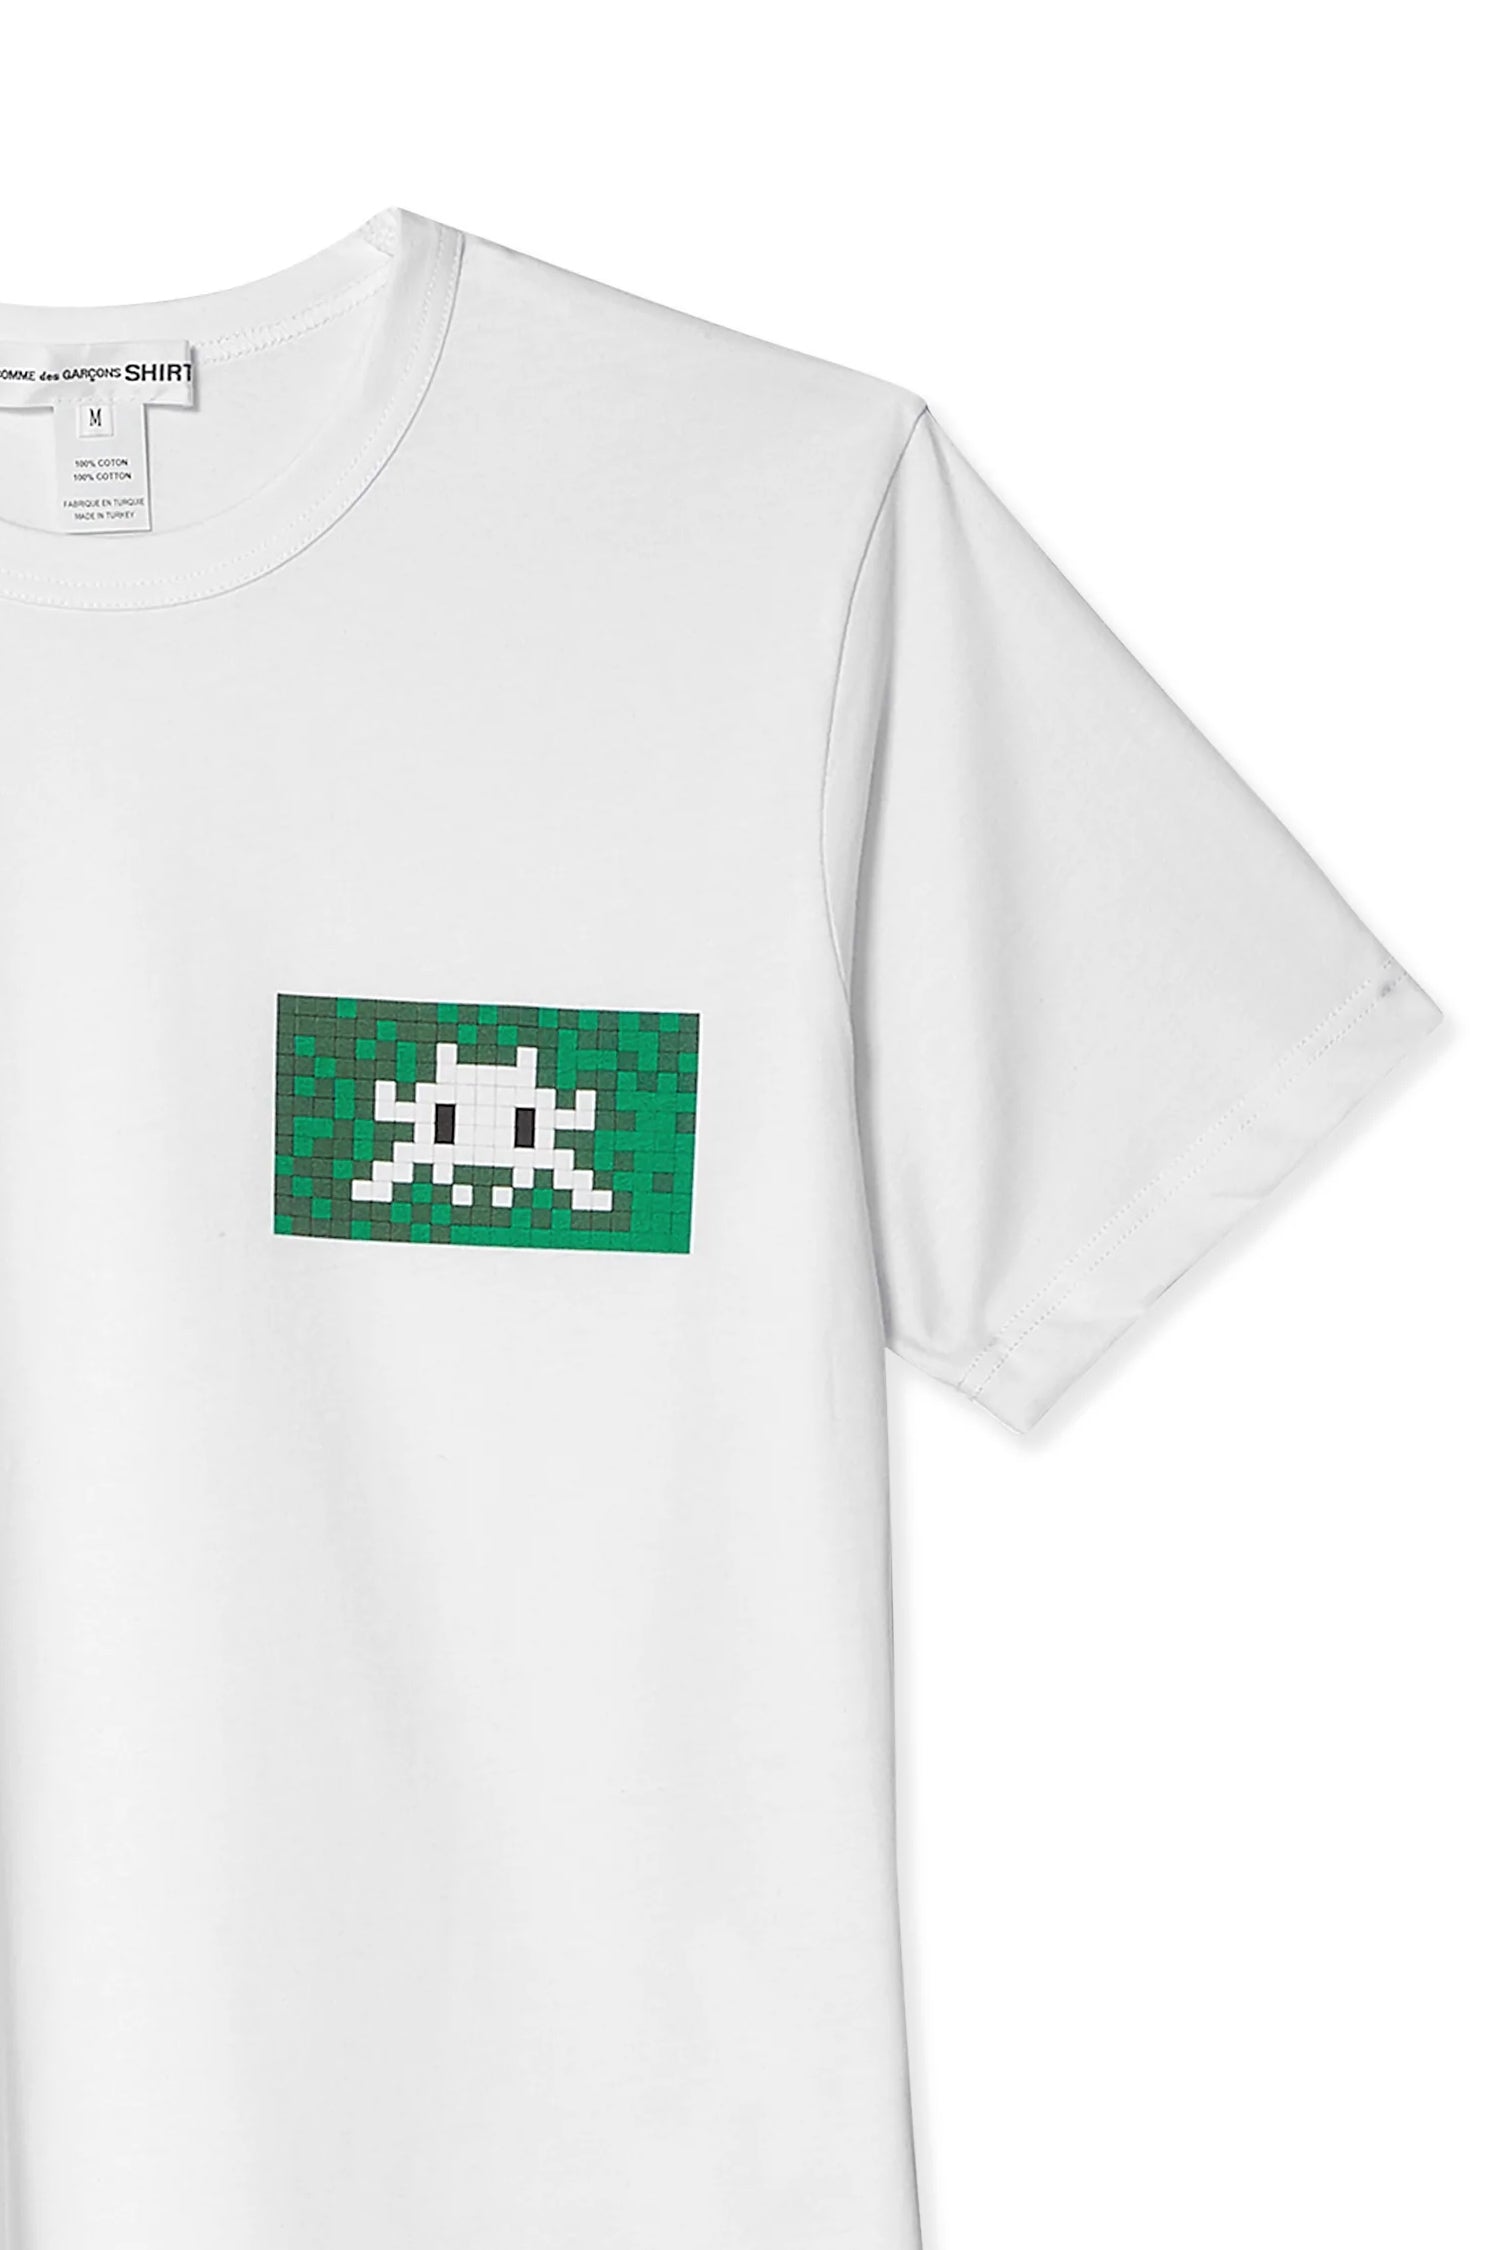 COMME des GARCONS(コムデギャルソン) FJ-T003 CDG Shirt x Invader T